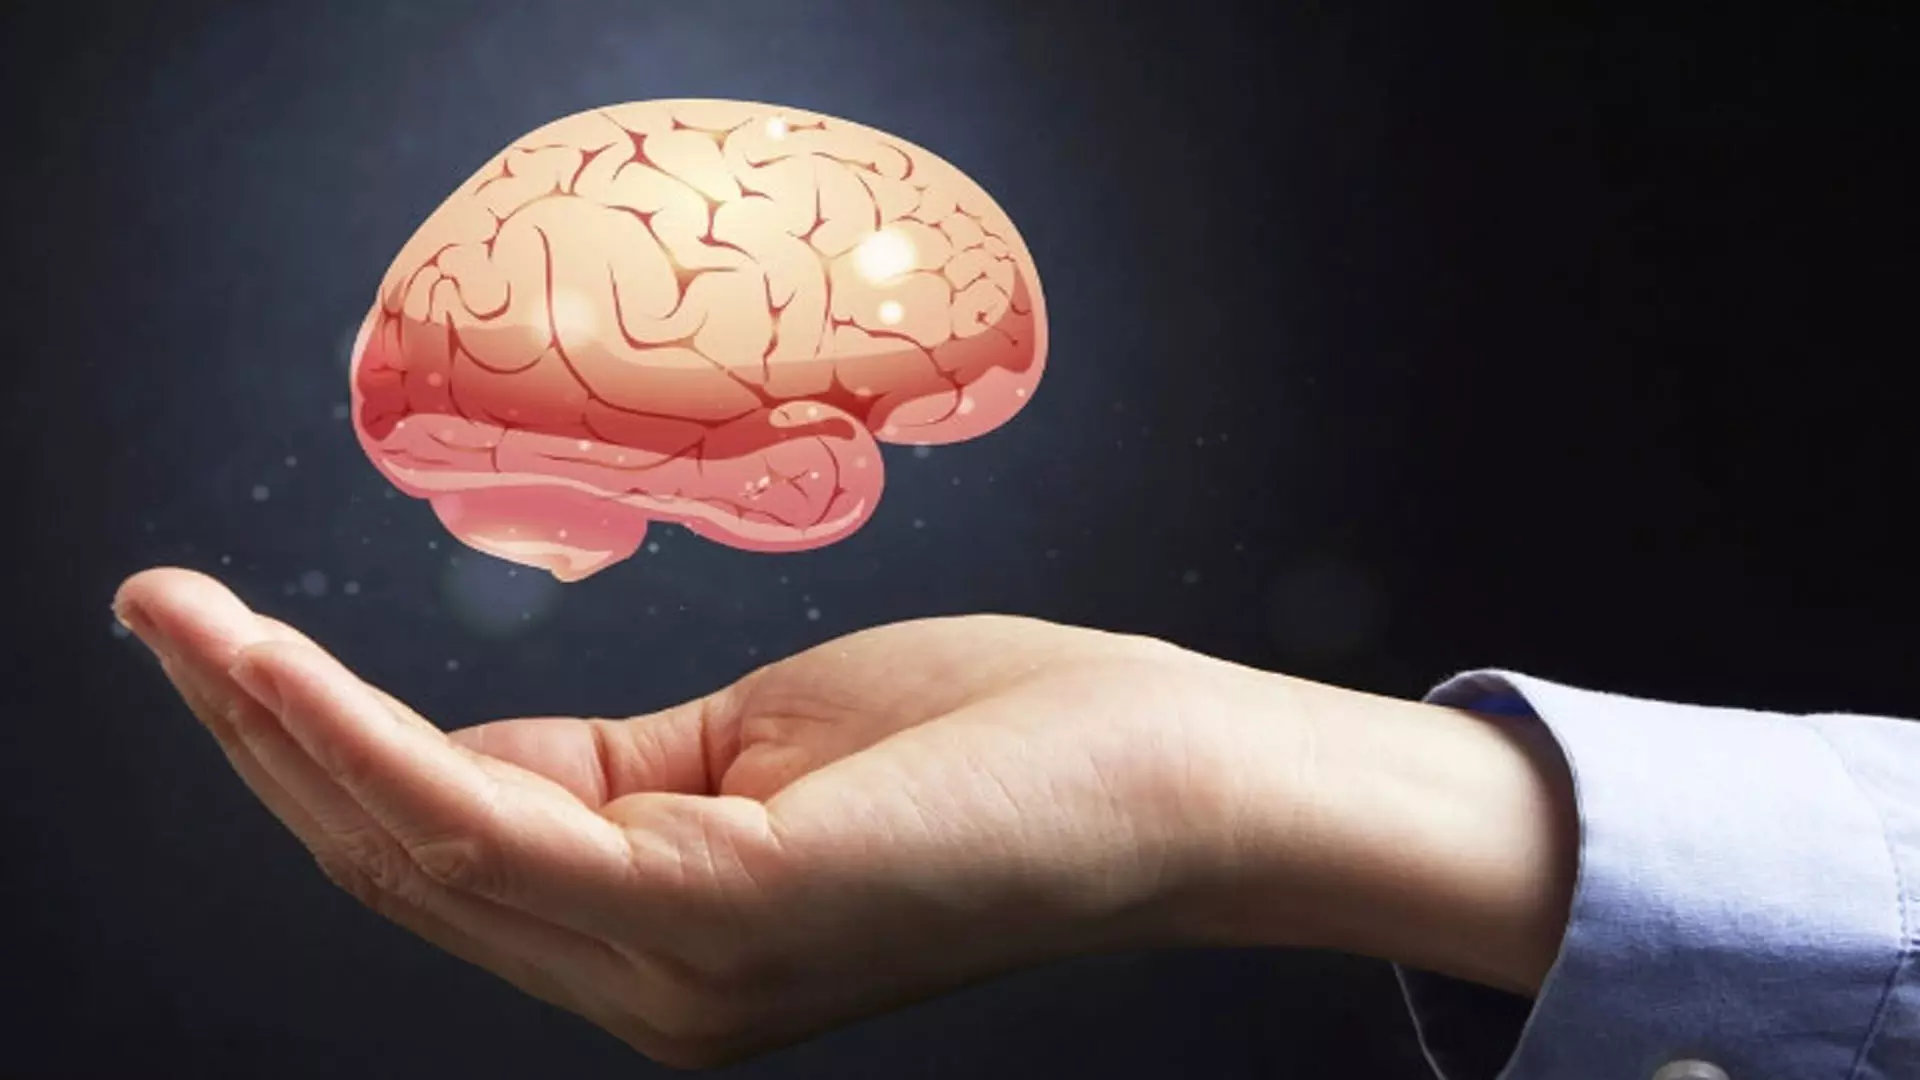 brain health: मस्तिष्क स्वास्थ्य को बेहतर बनाने में मदद करने वाले उपचार